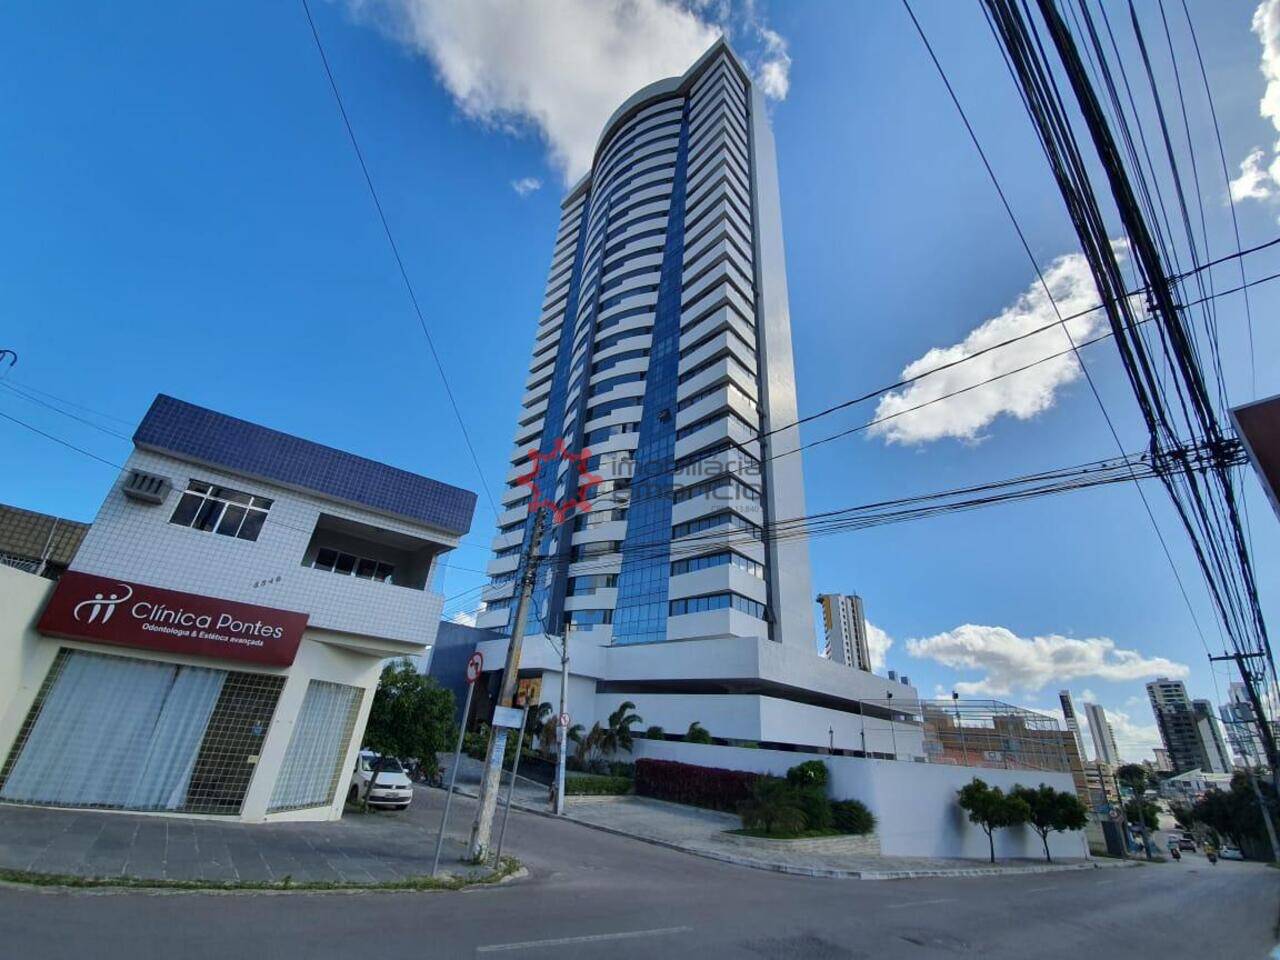 Apartamento Universitário, Caruaru - PE